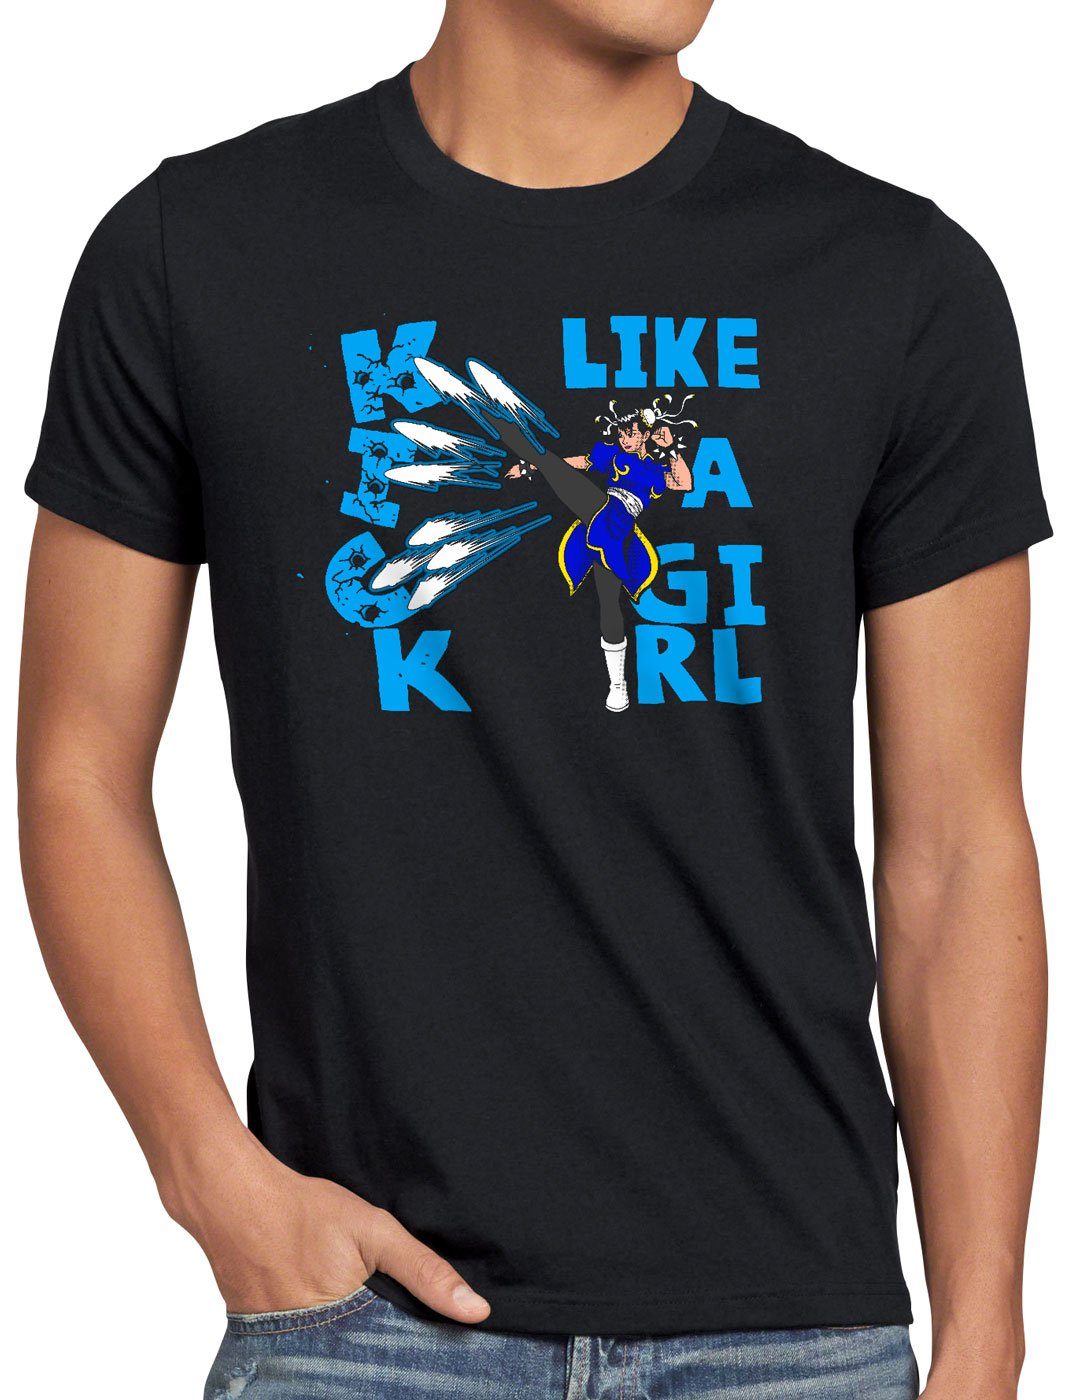 final Girl beat ps4 style3 Kick T-Shirt like up a arcade Herren em Print-Shirt ps3 street snes